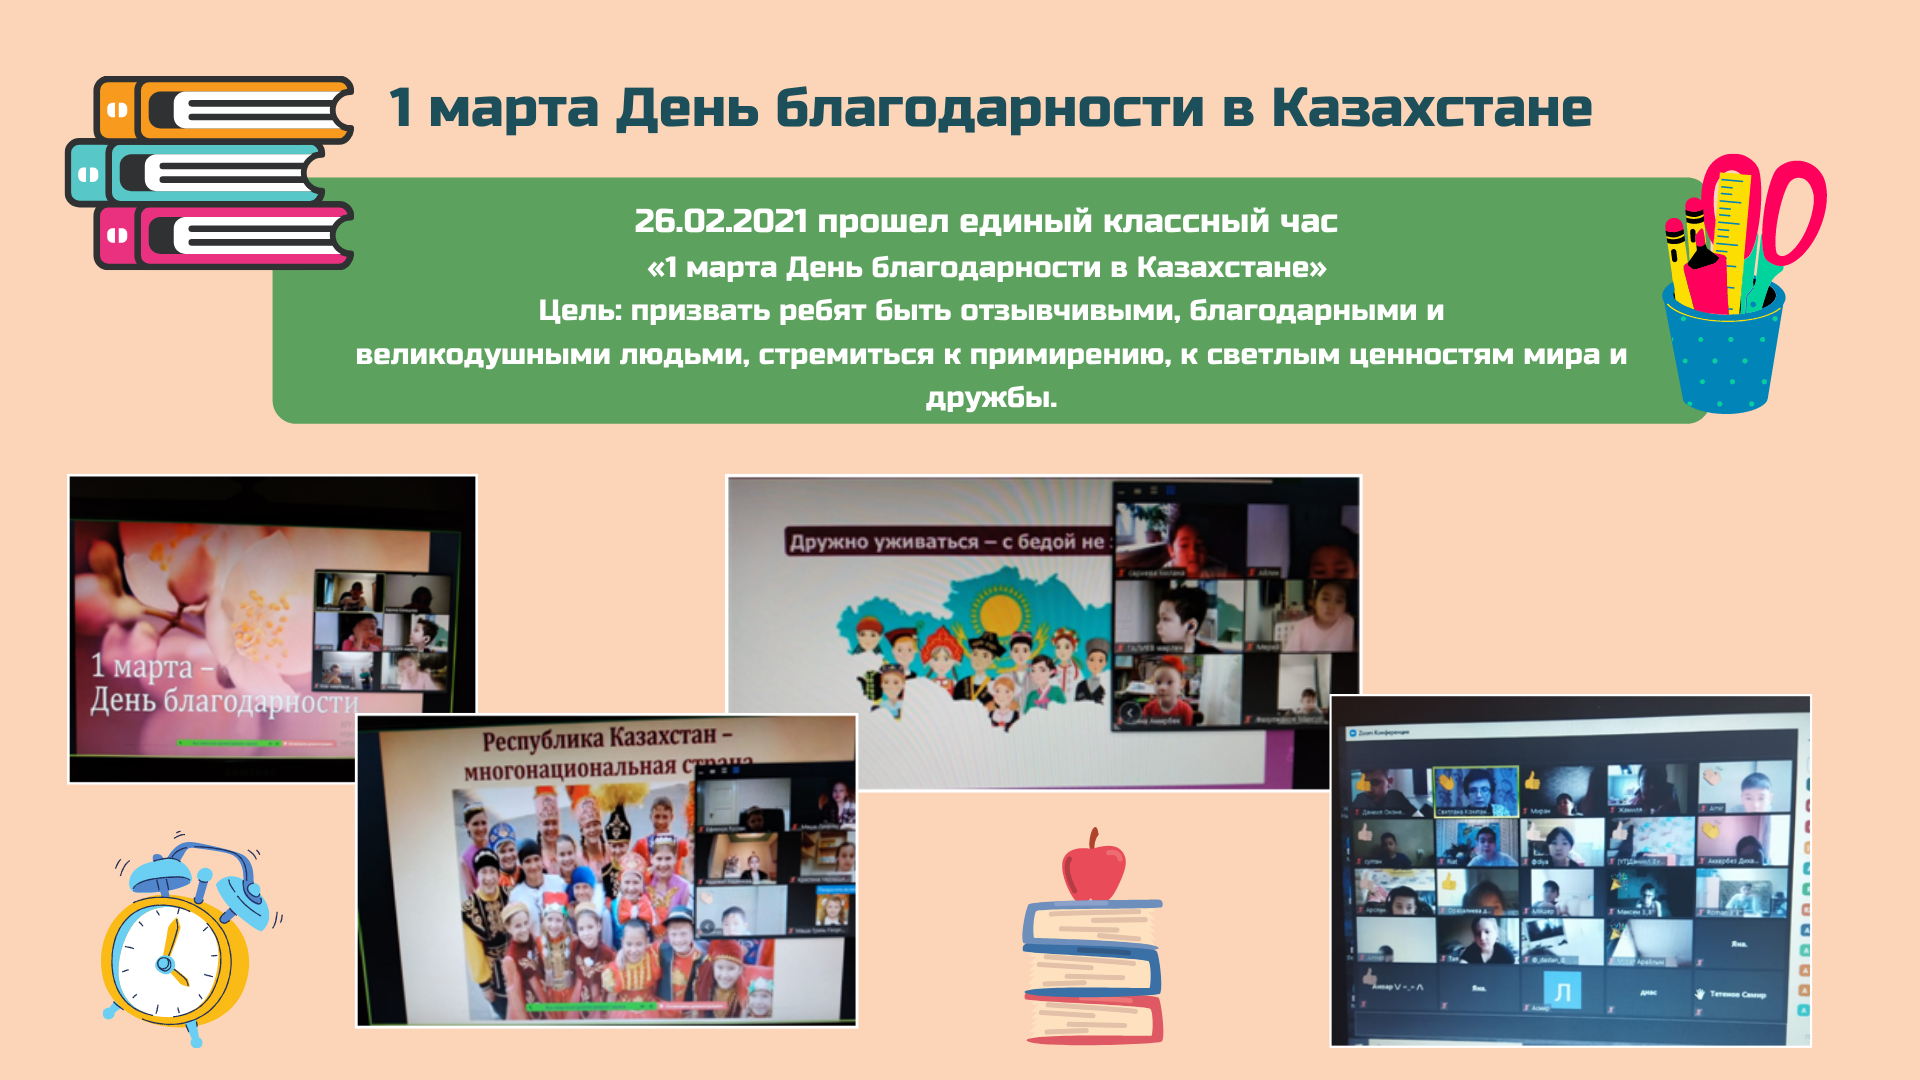 Классный час "1 марта День благодарности в Казахстане"